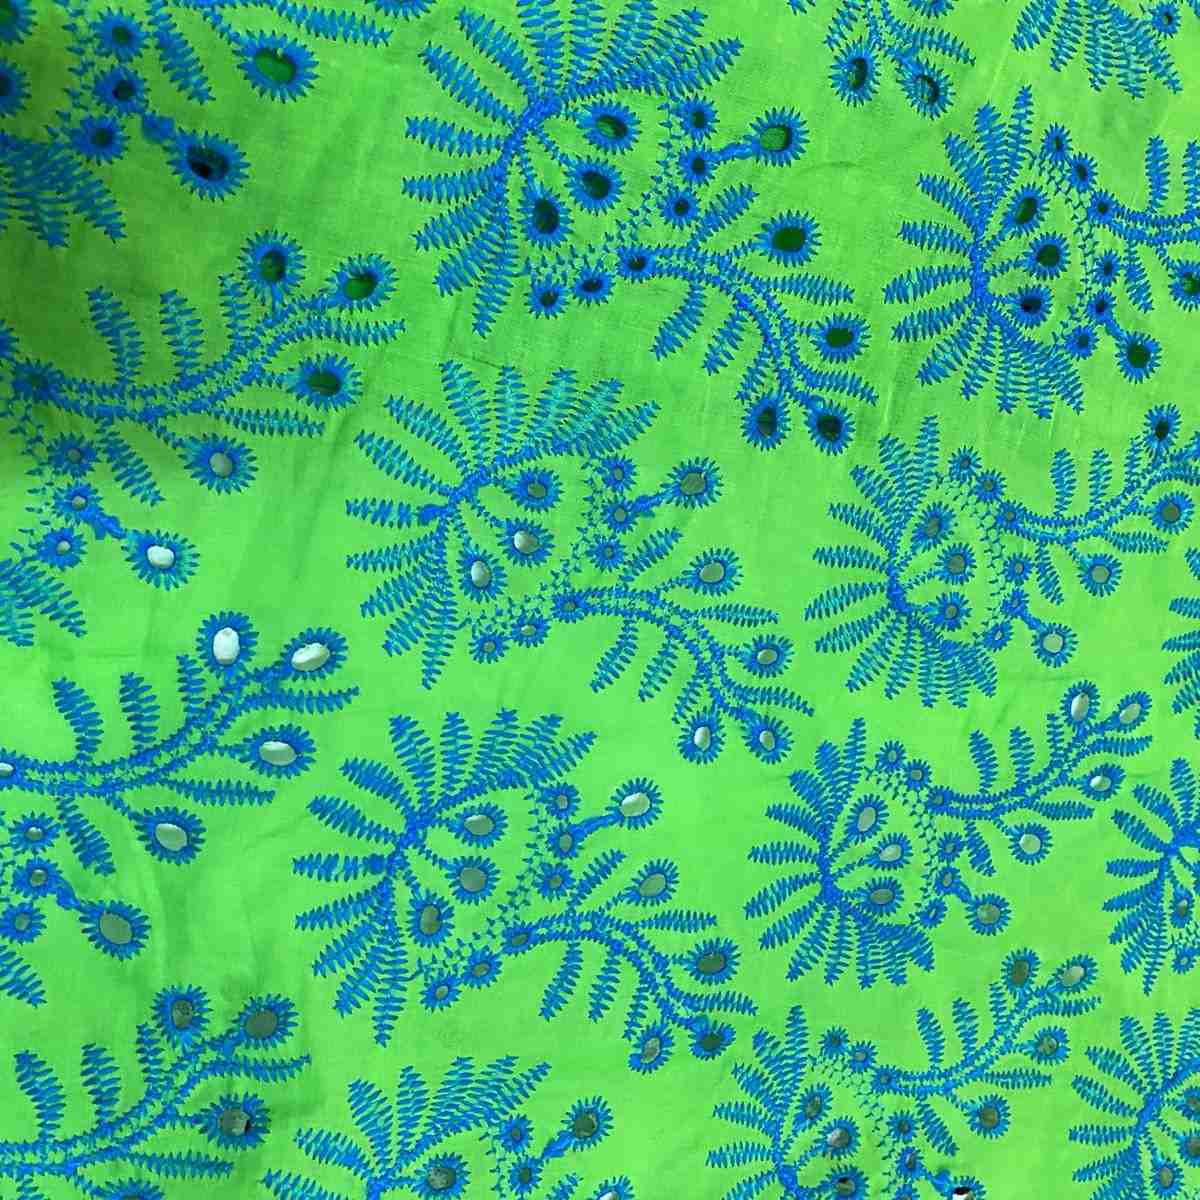 Tecido Laise Bordada Arabesco Verde Detalhes Azul - Empório dos Tecidos 